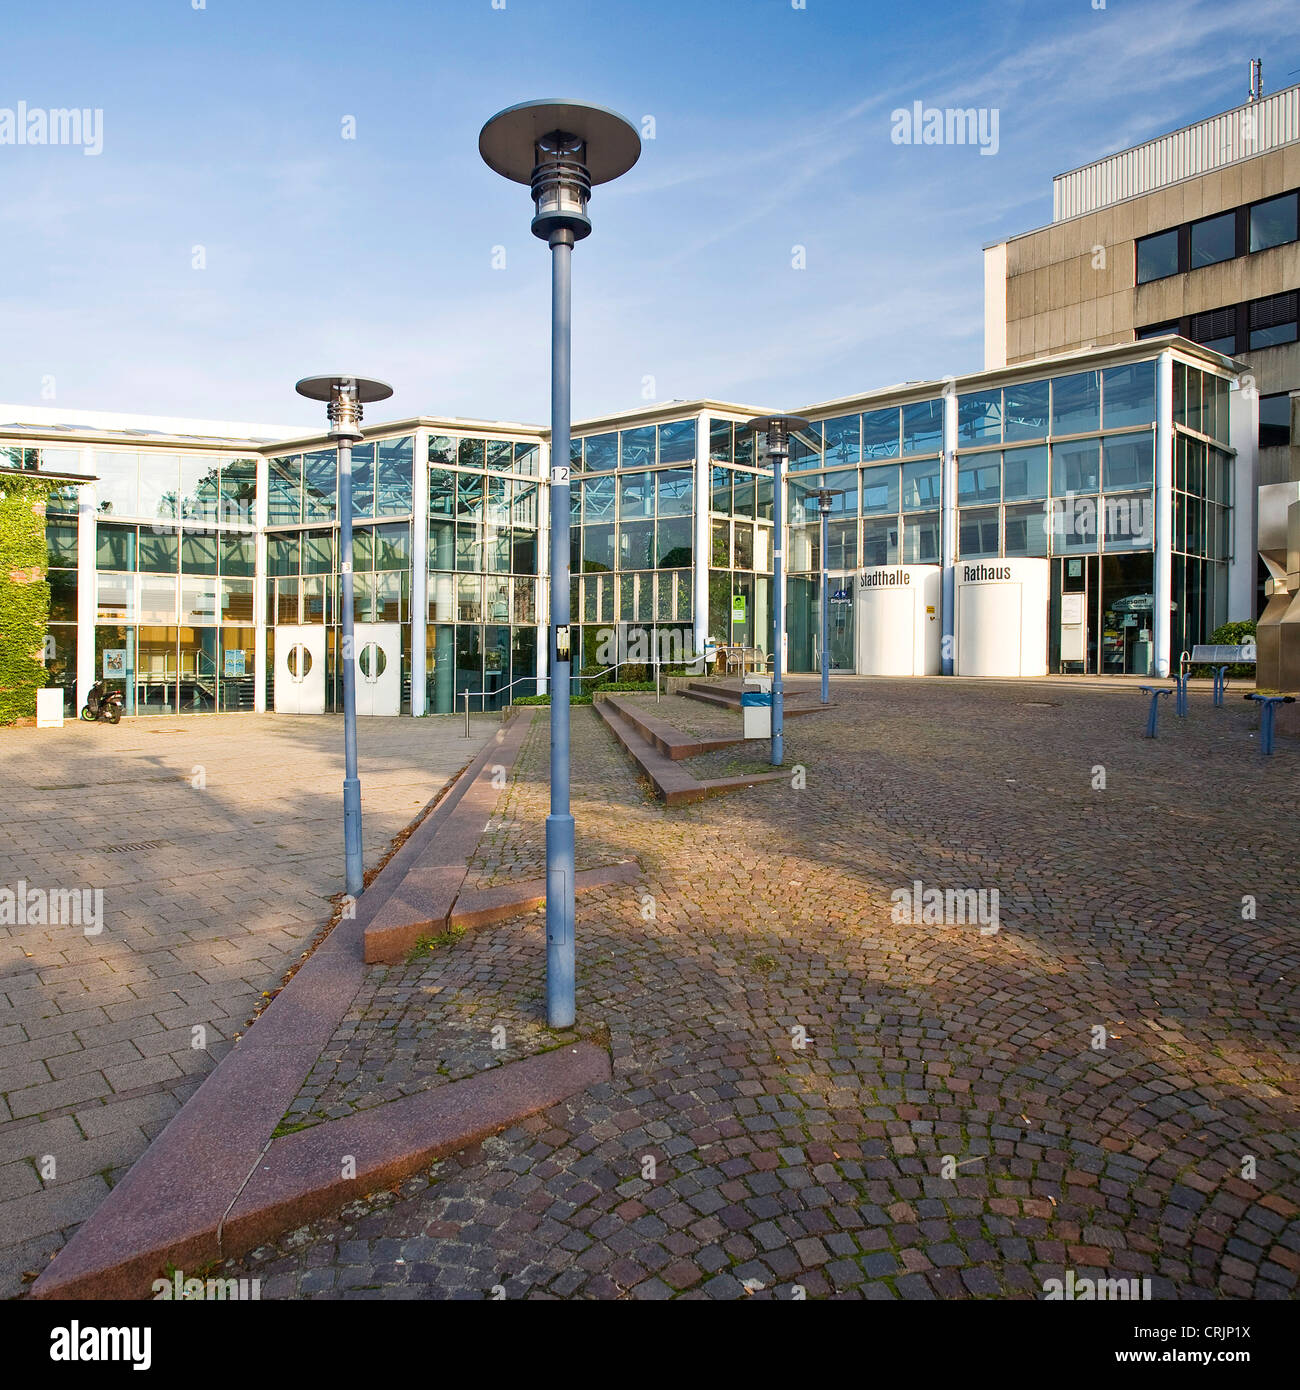 El ayuntamiento y el Guildhall, Stadthalle, en Kamen, Alemania, Renania del Norte-Westfalia, área de Ruhr, Kamen Foto de stock